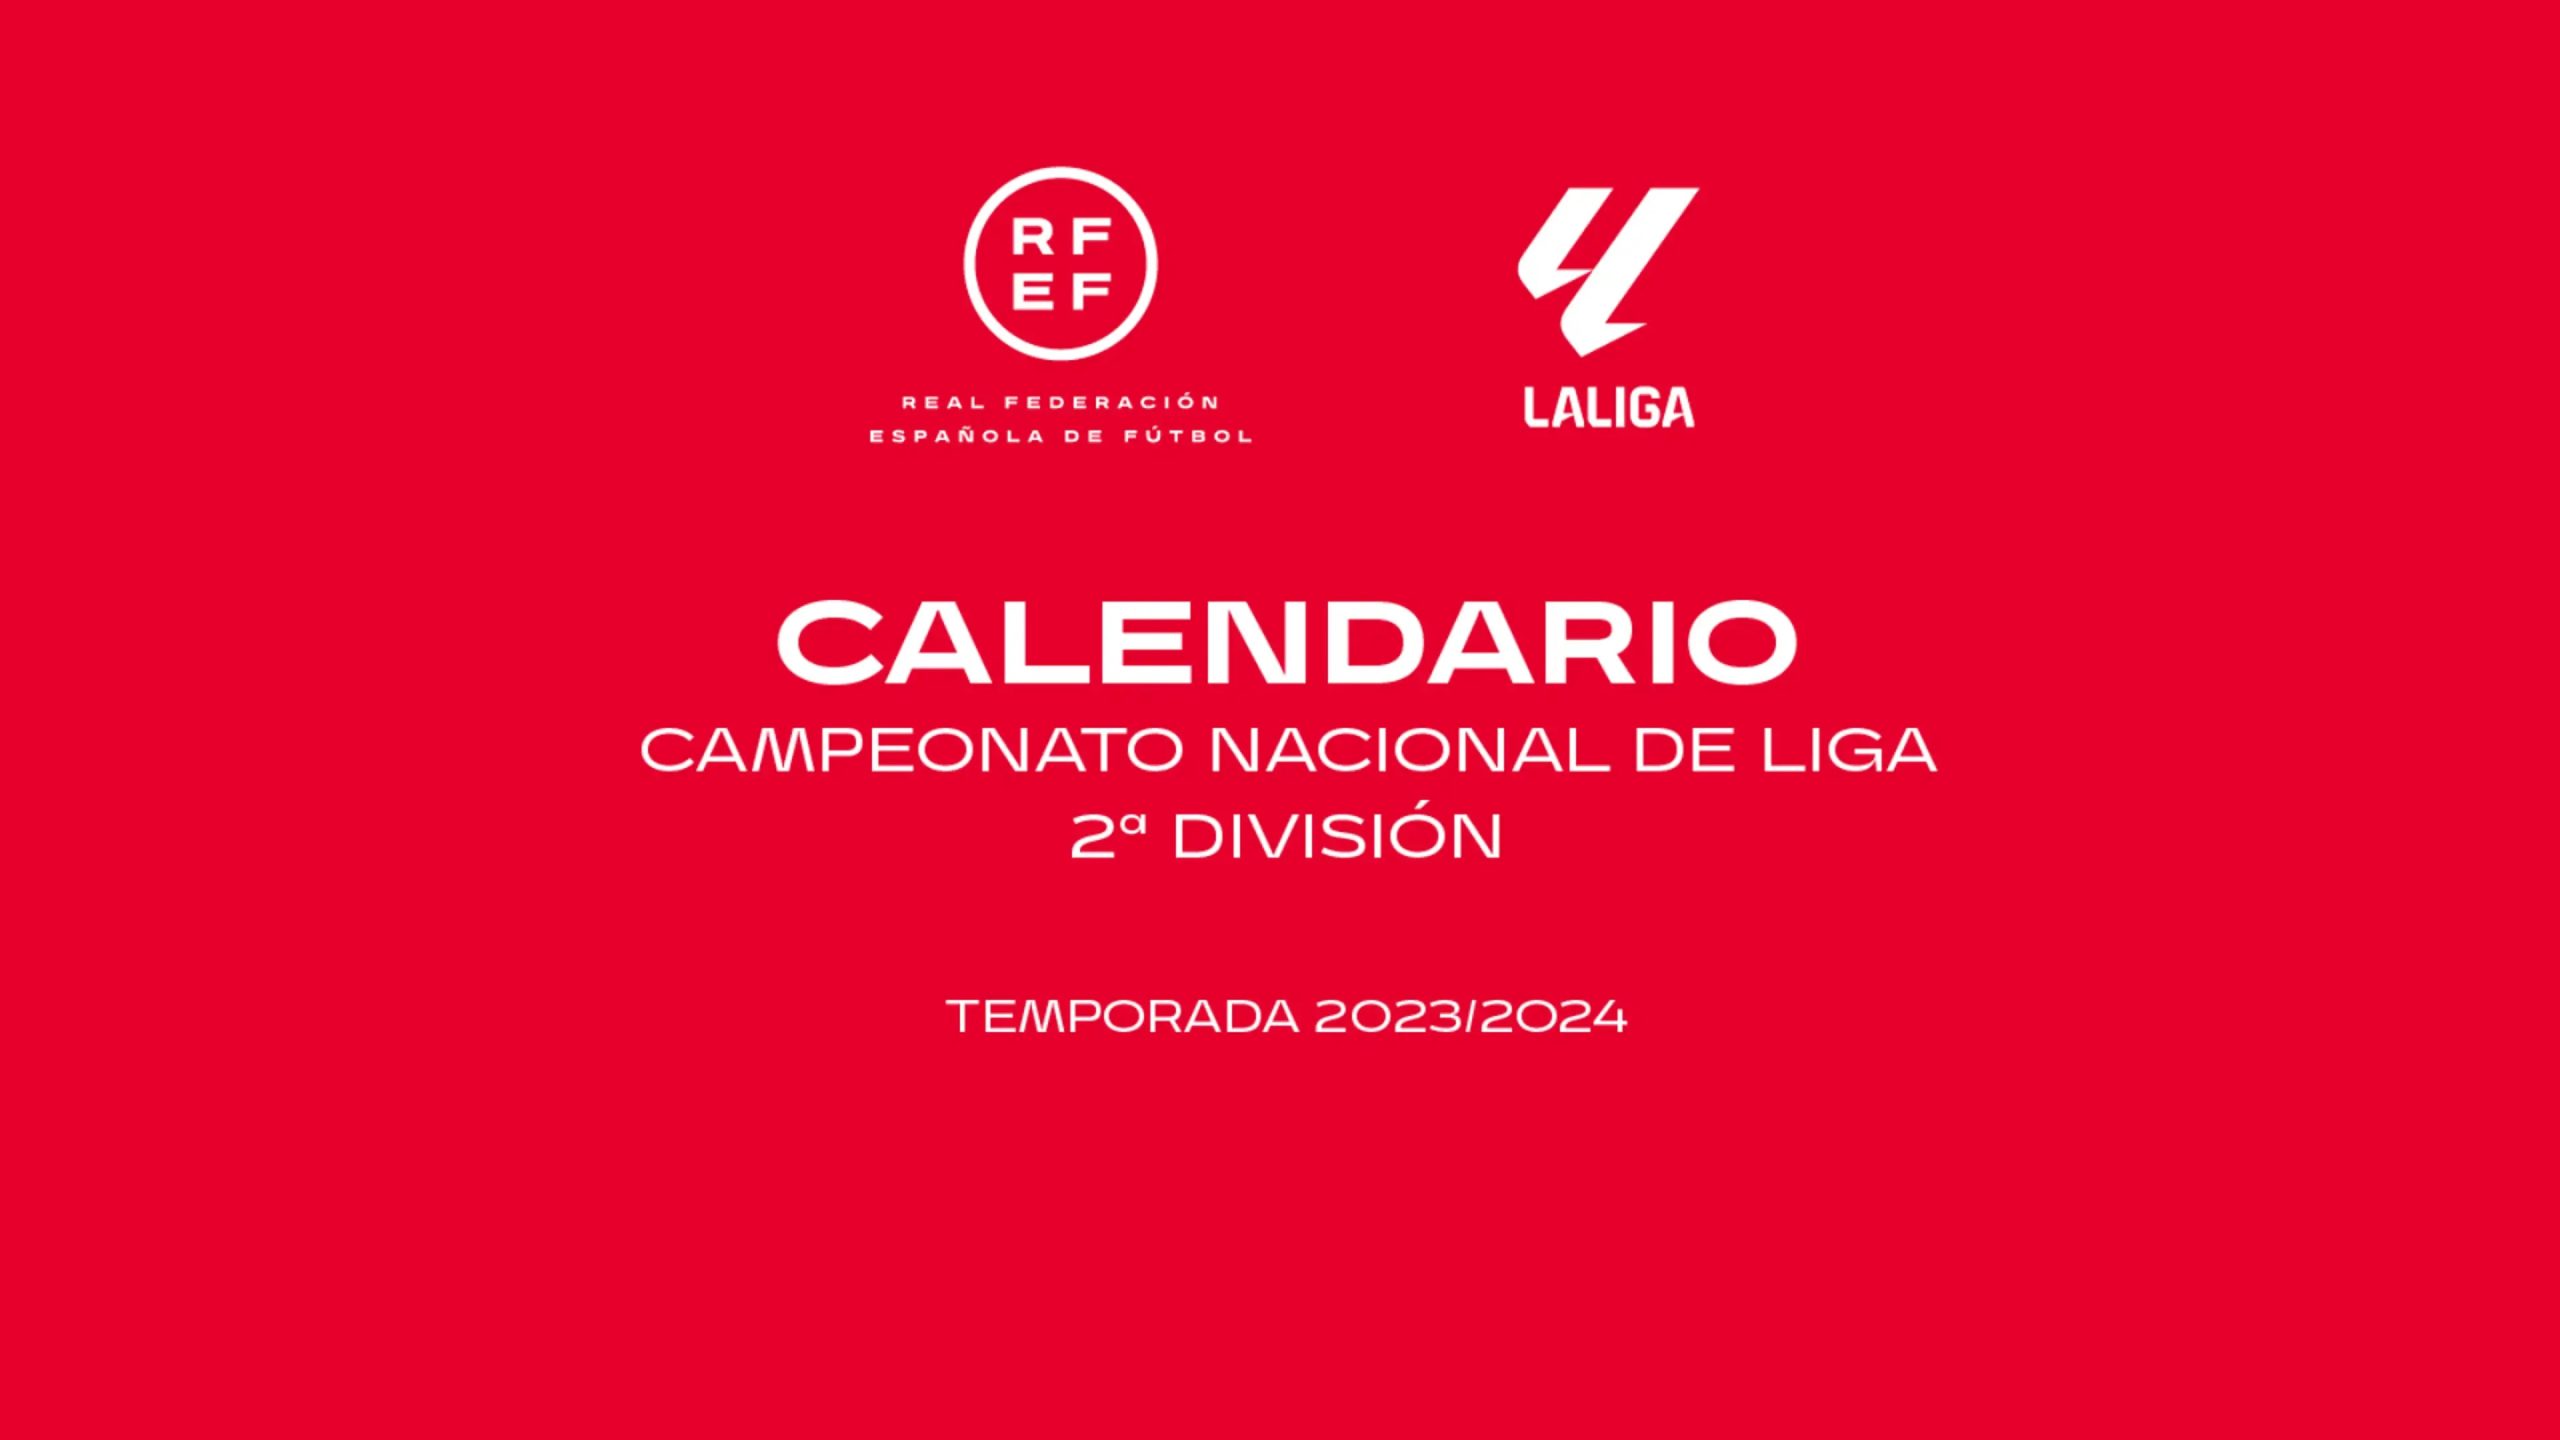  Segunda Divisão espanhola tem calendário divulgado